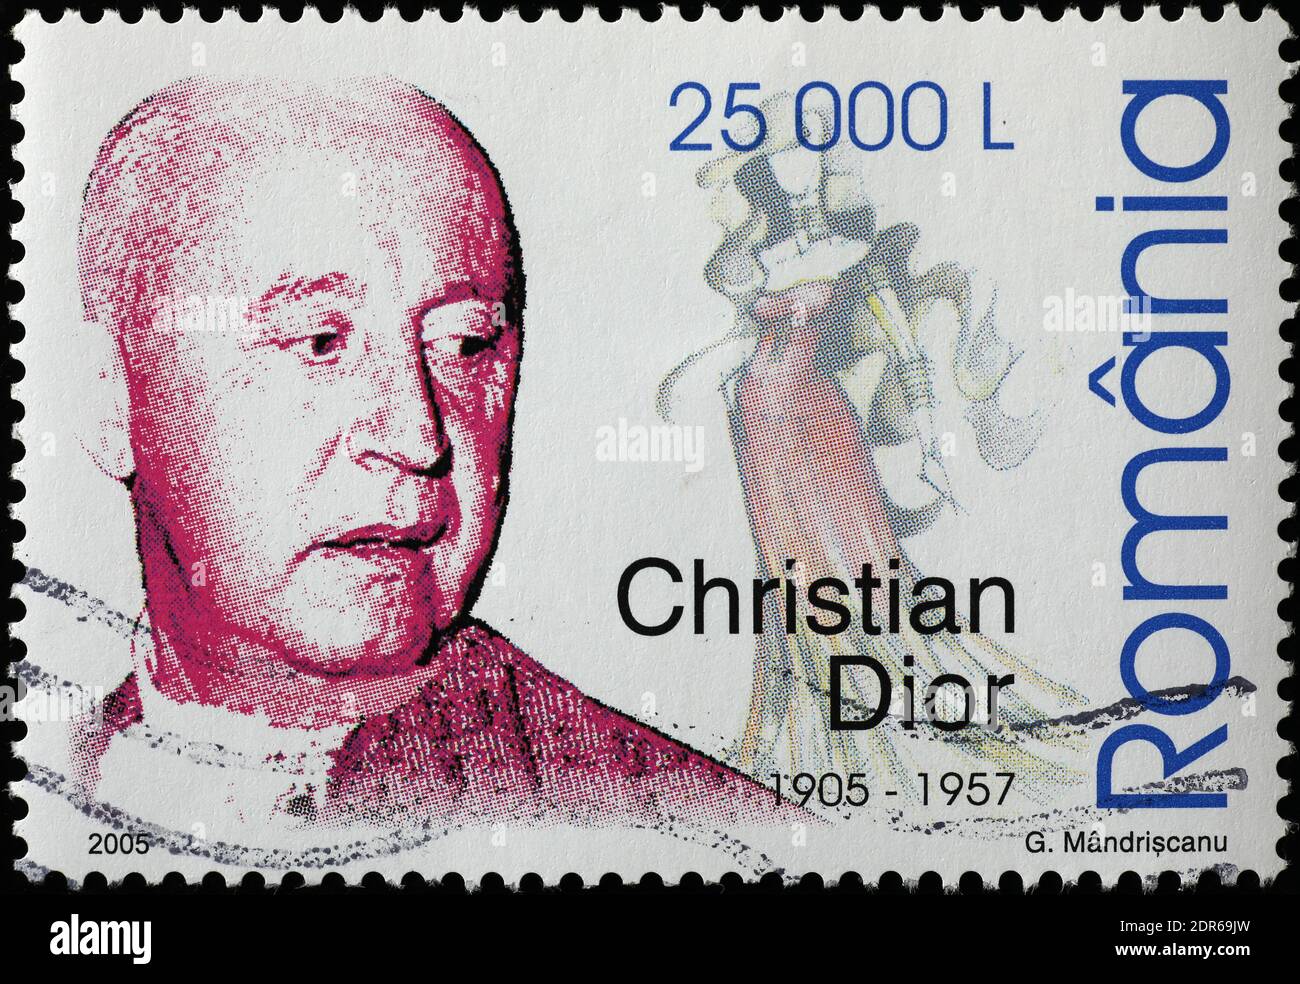 Christian Dior sur le timbre-poste roumain Banque D'Images